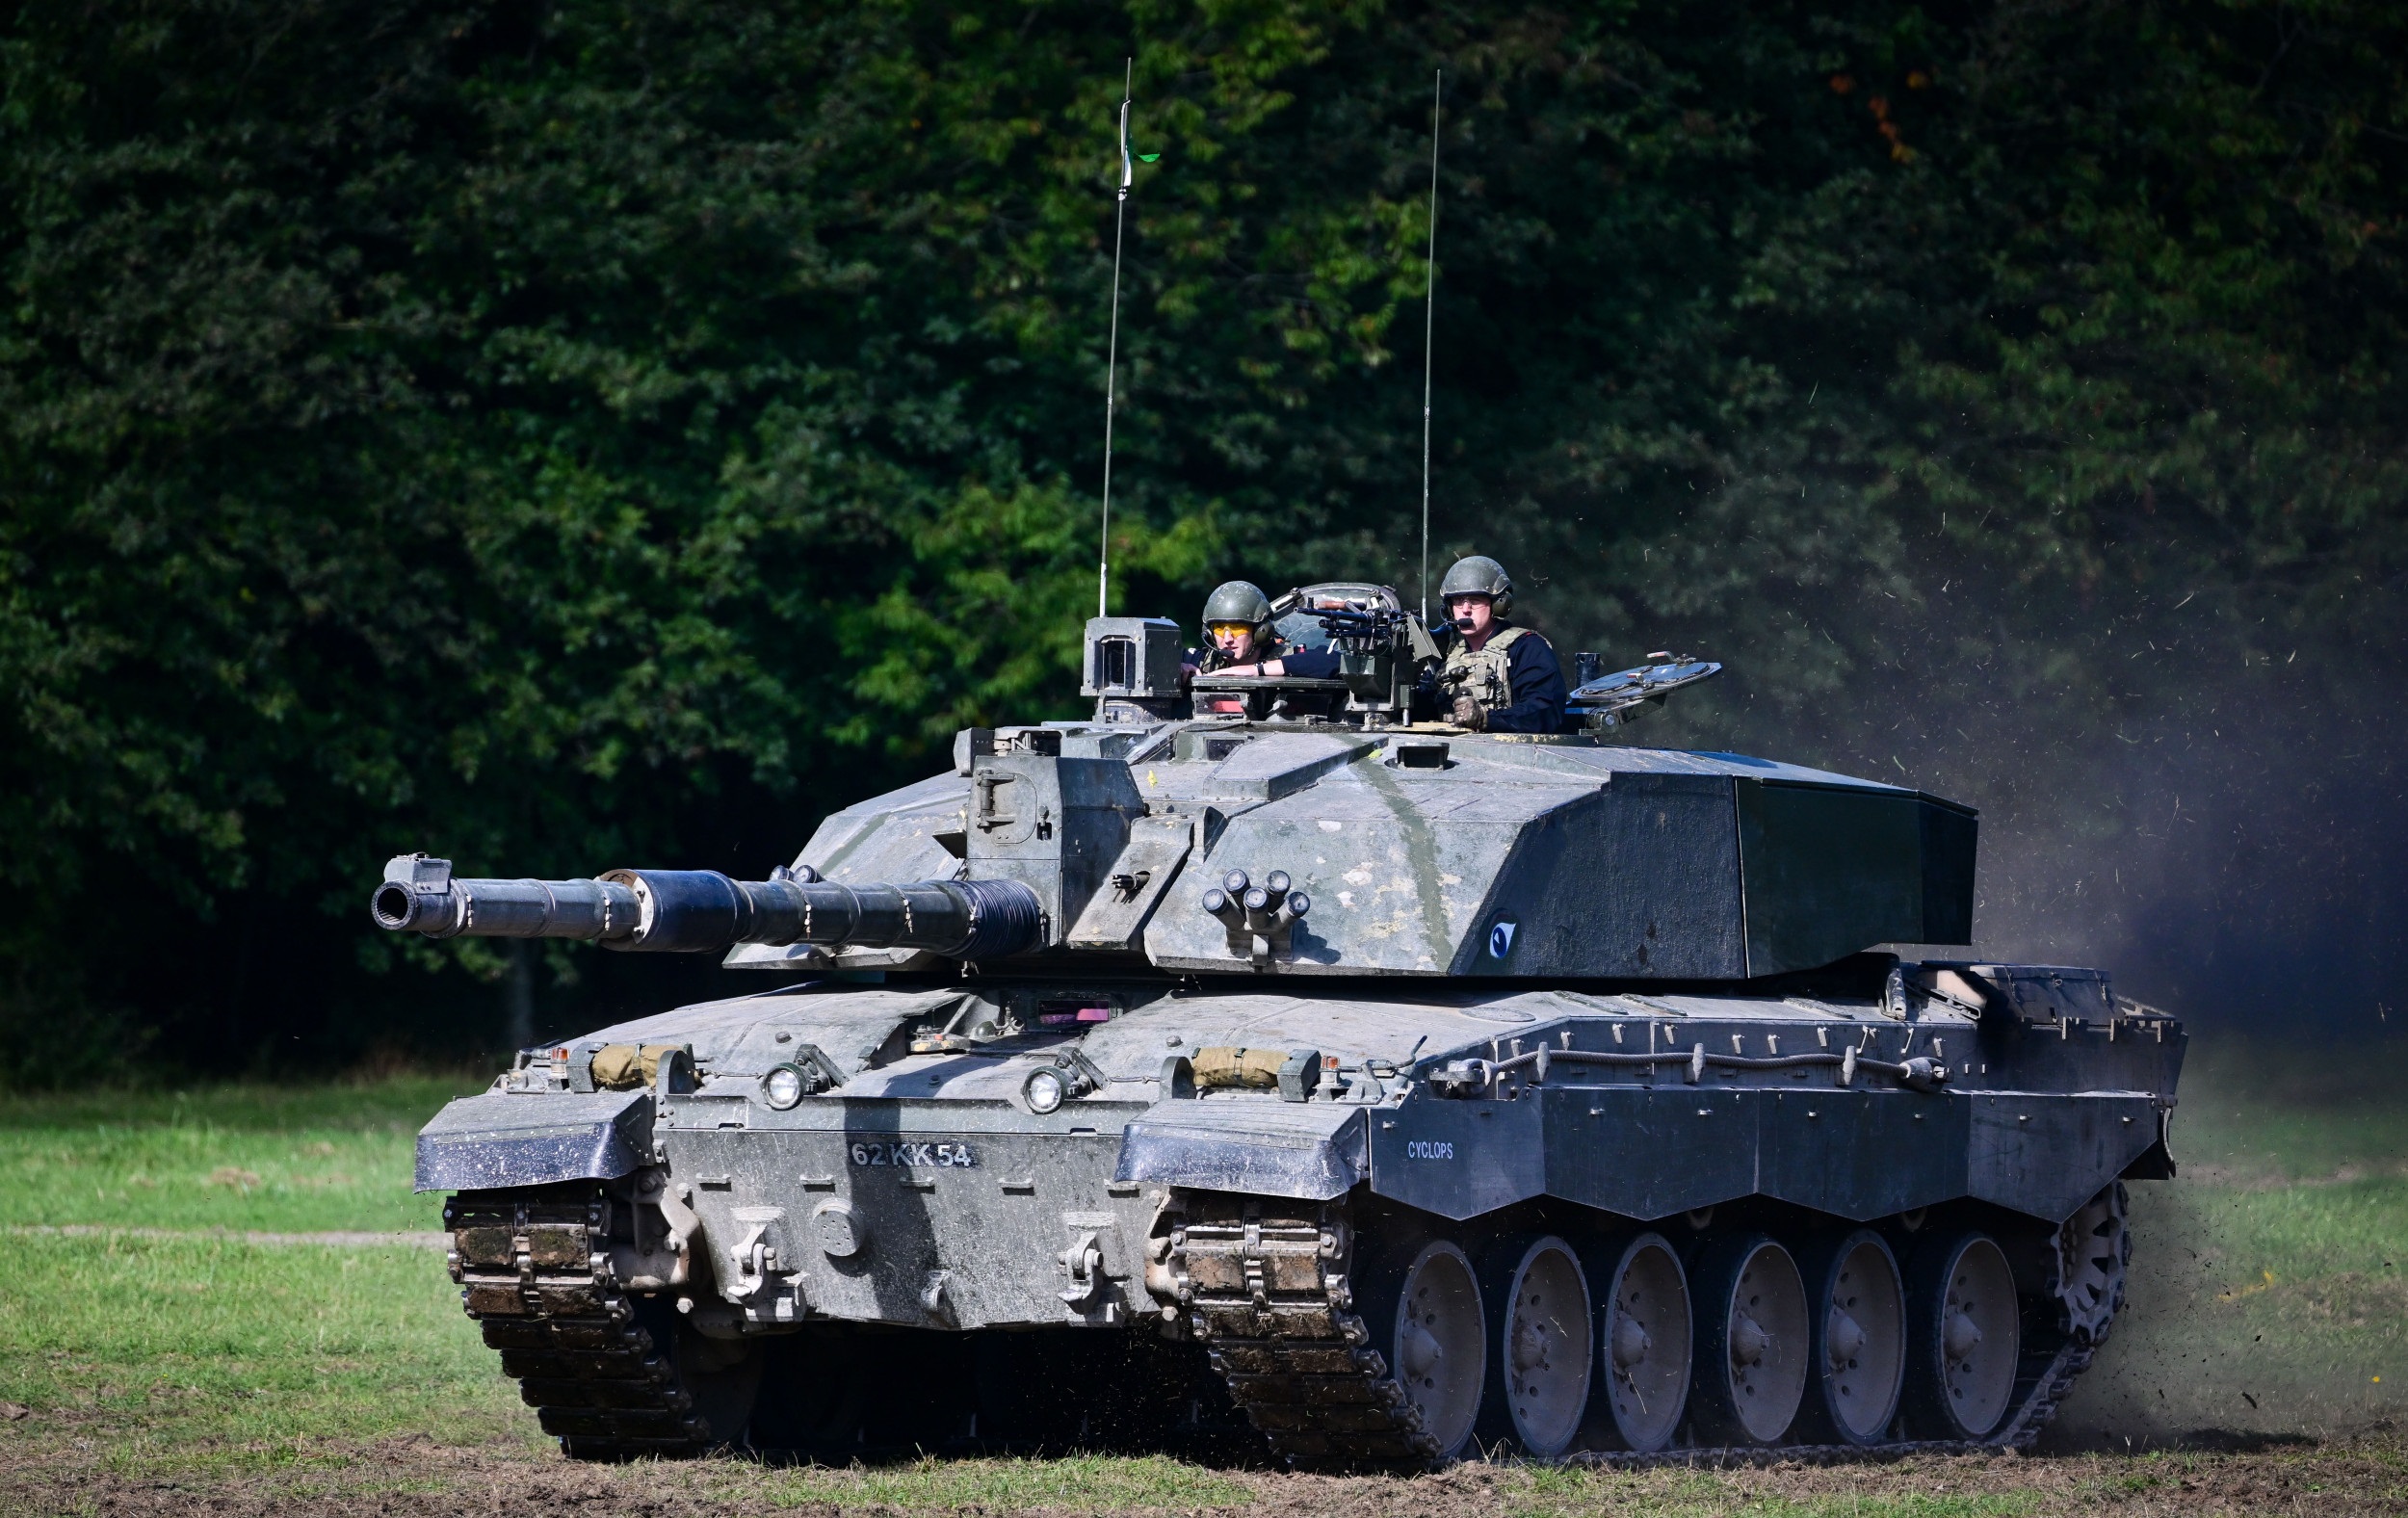 El 16 de enero, Gran Bretaña podría anunciar el suministro de tanques Challenger 2 a Ucrania